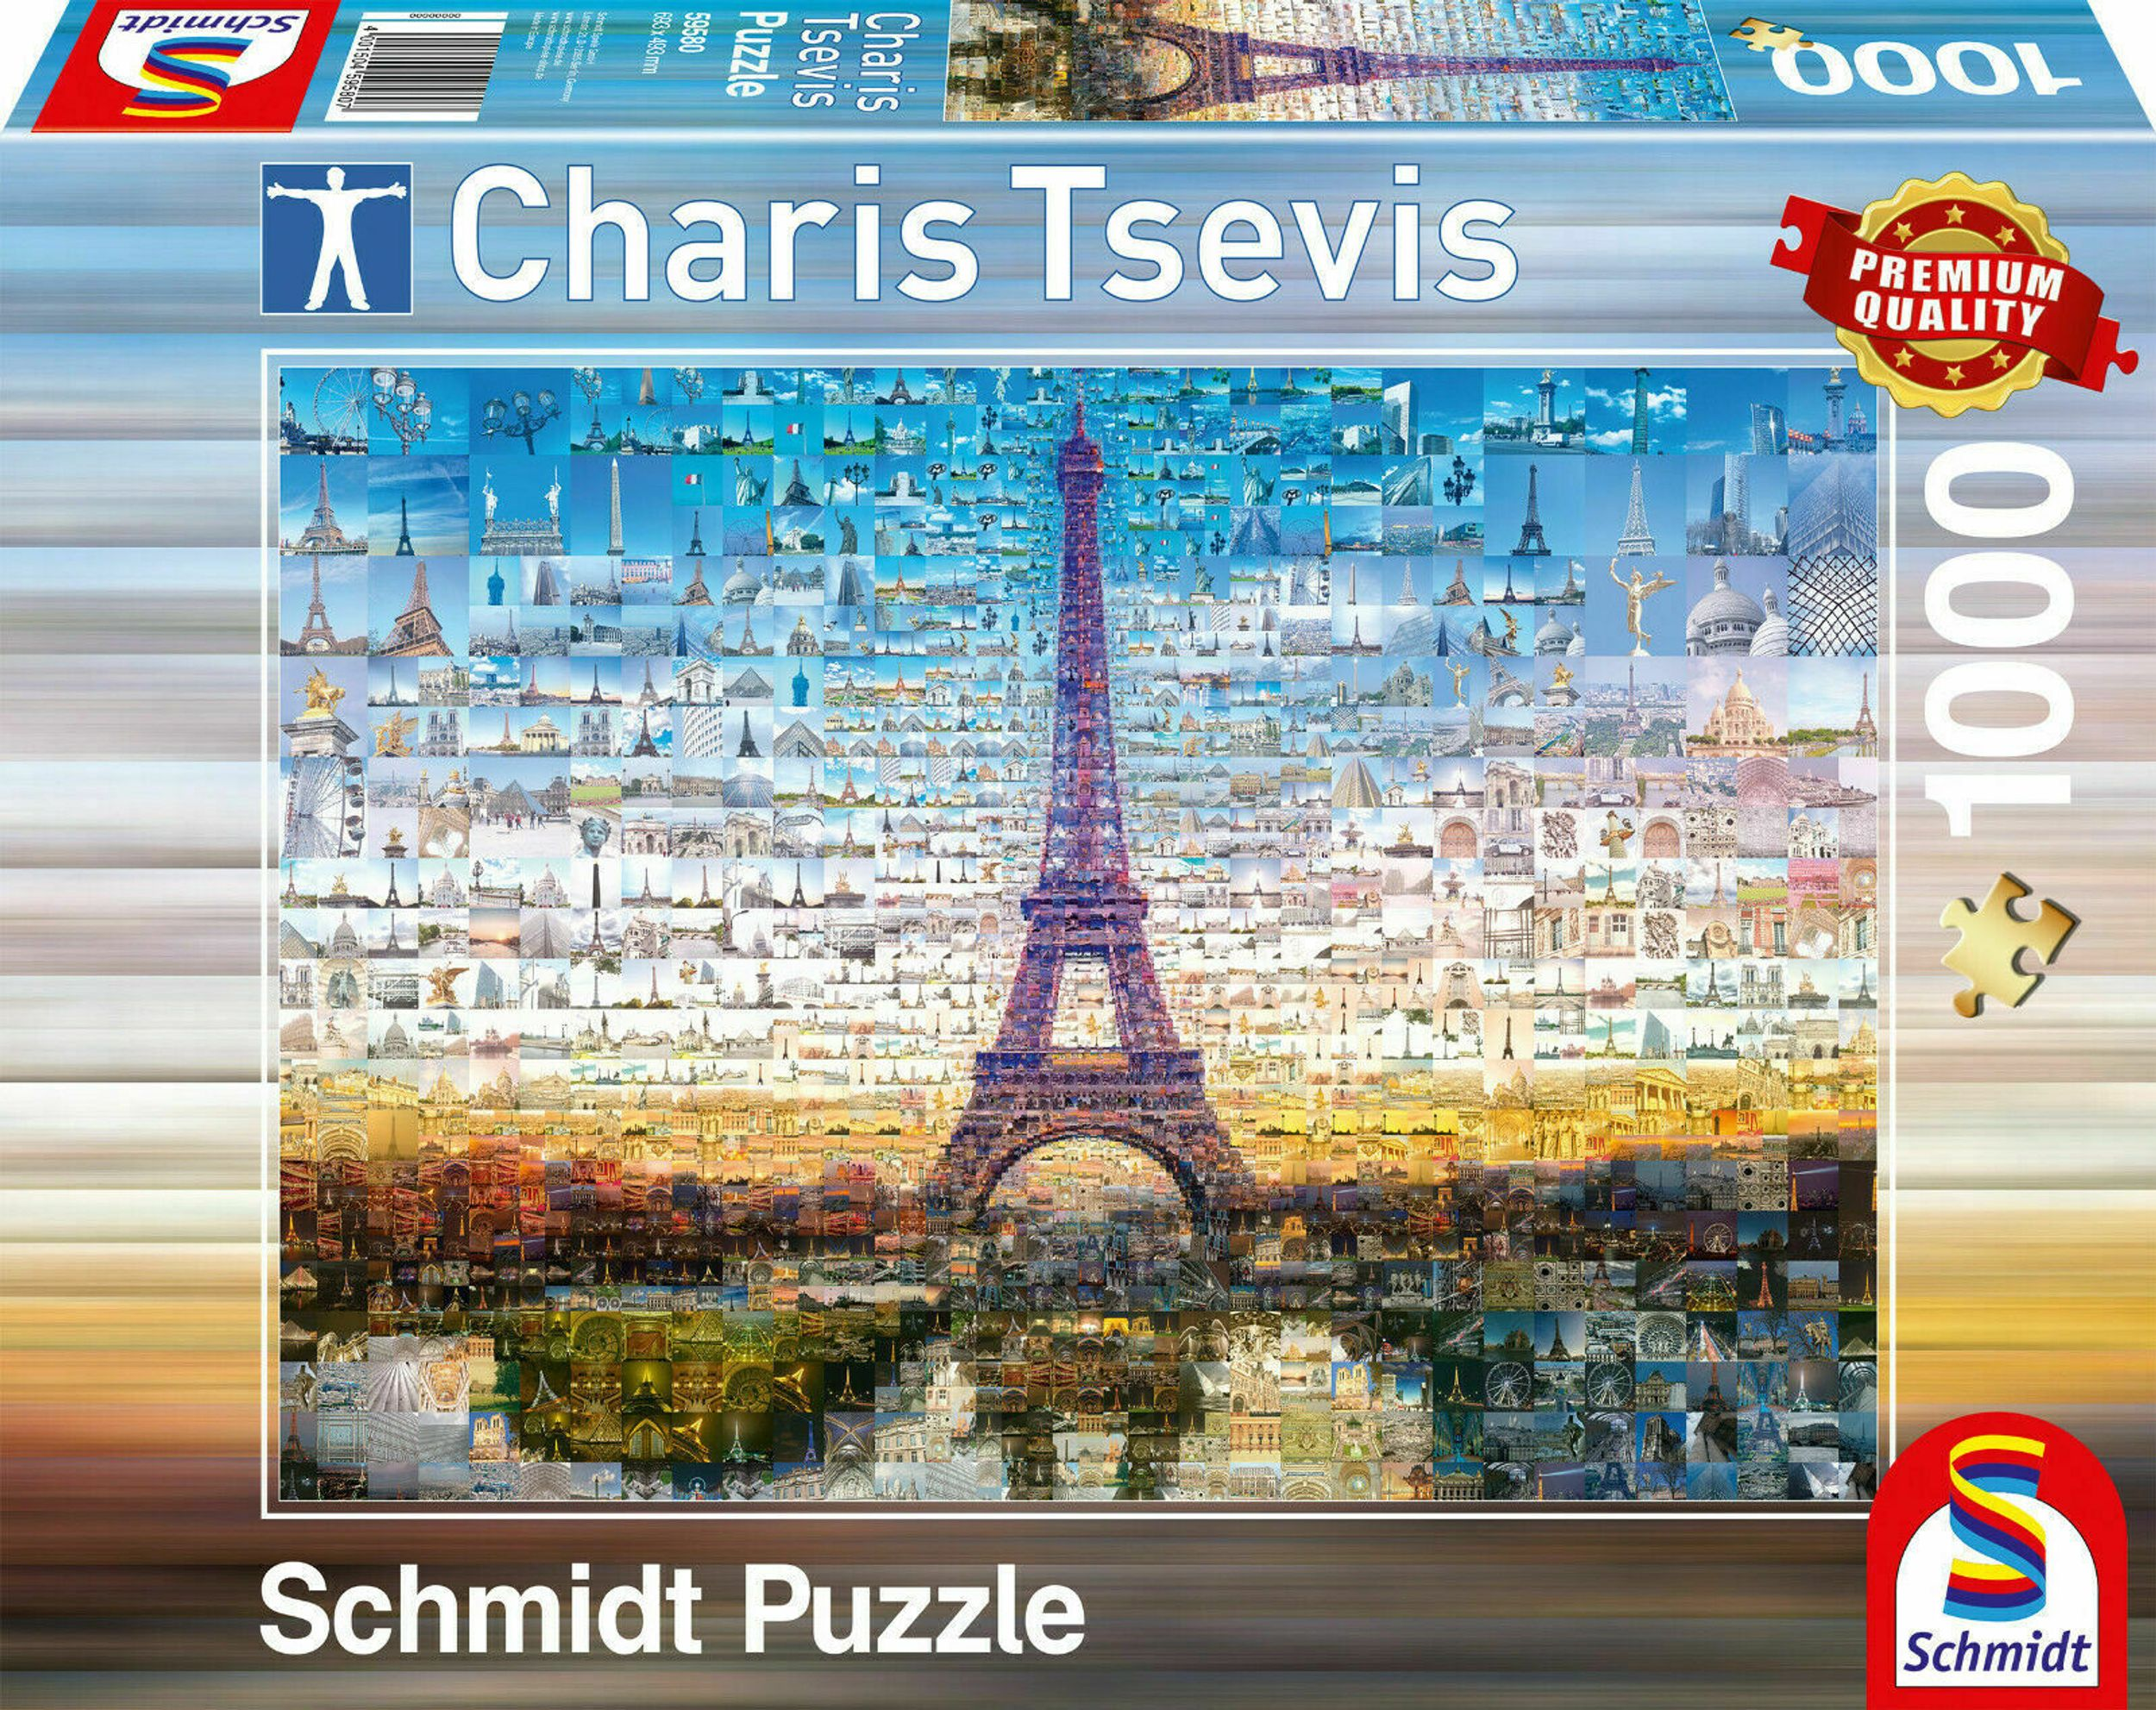 SCHMIDT Paris SPIELE Puzzle